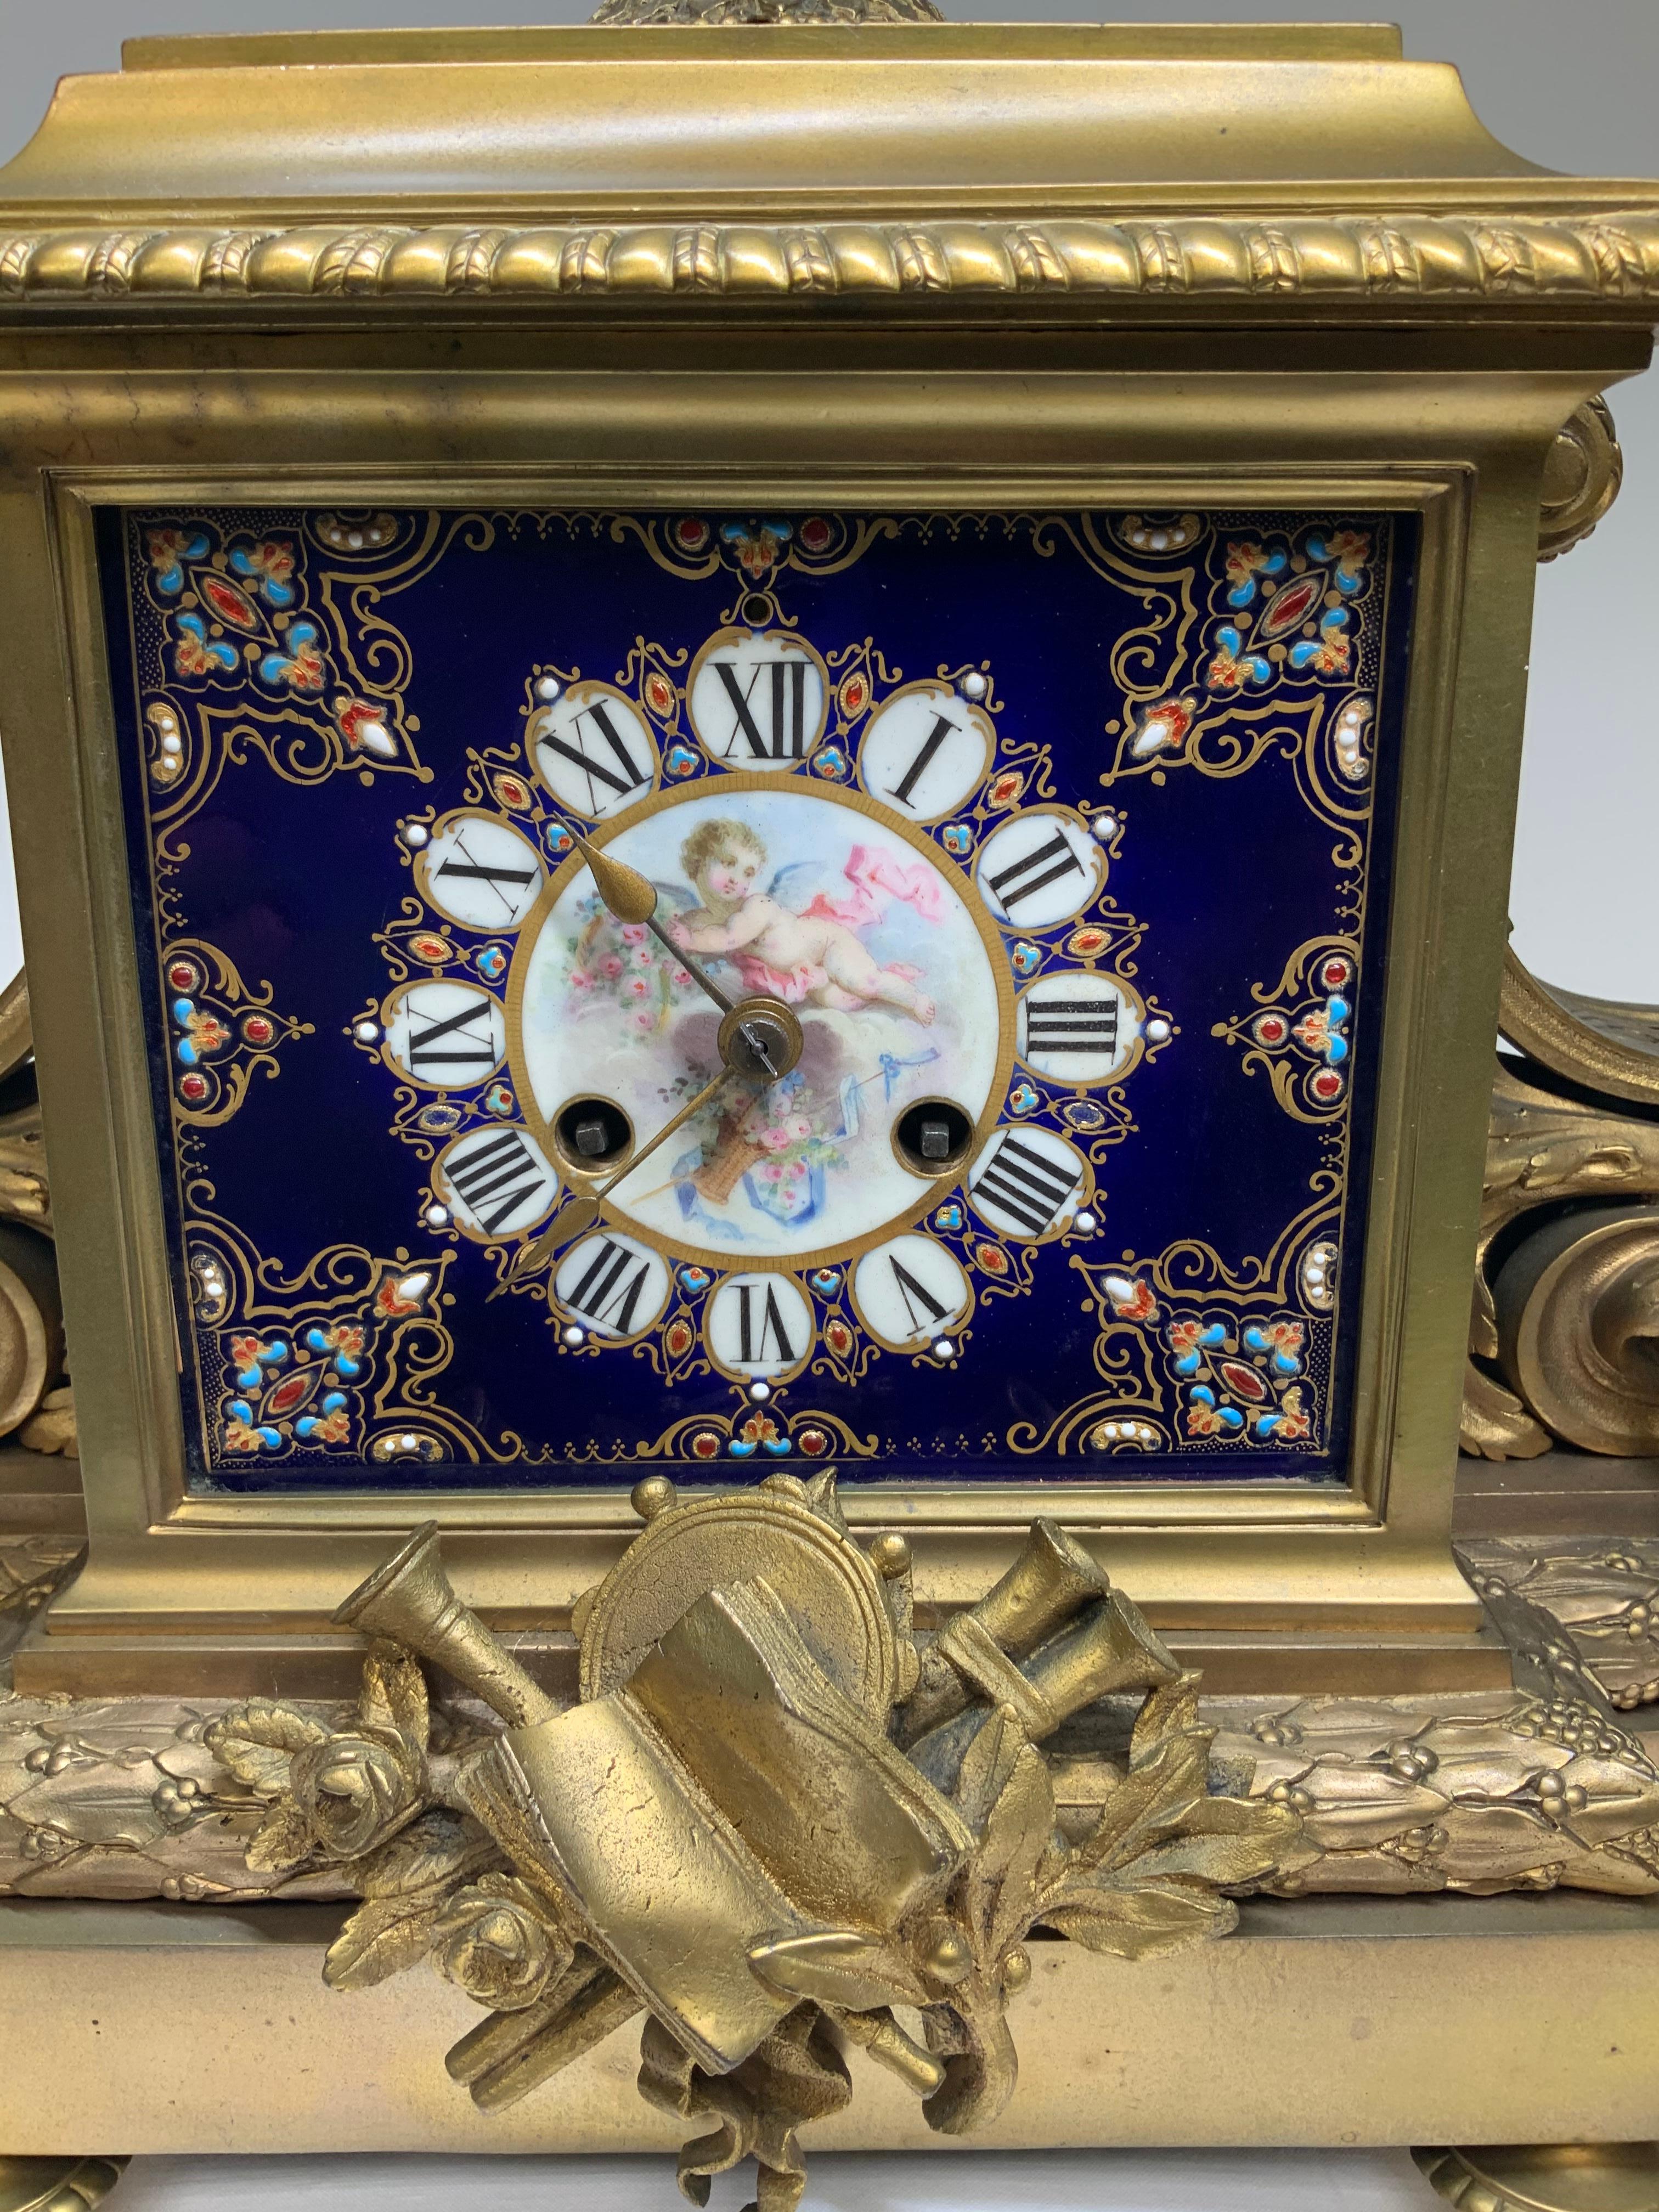 Dies ist ein Sevres-Stil Porzellan Ormolu Bronze montiert Kaminsims Uhr. Die kobaltblaue Porzellantafel auf der Vorderseite ist mit einem geflügelten Cherub, der einen Blumenkorb hält, handbemalt. Unter ihm steht ein weiterer Korb mit Blumen und